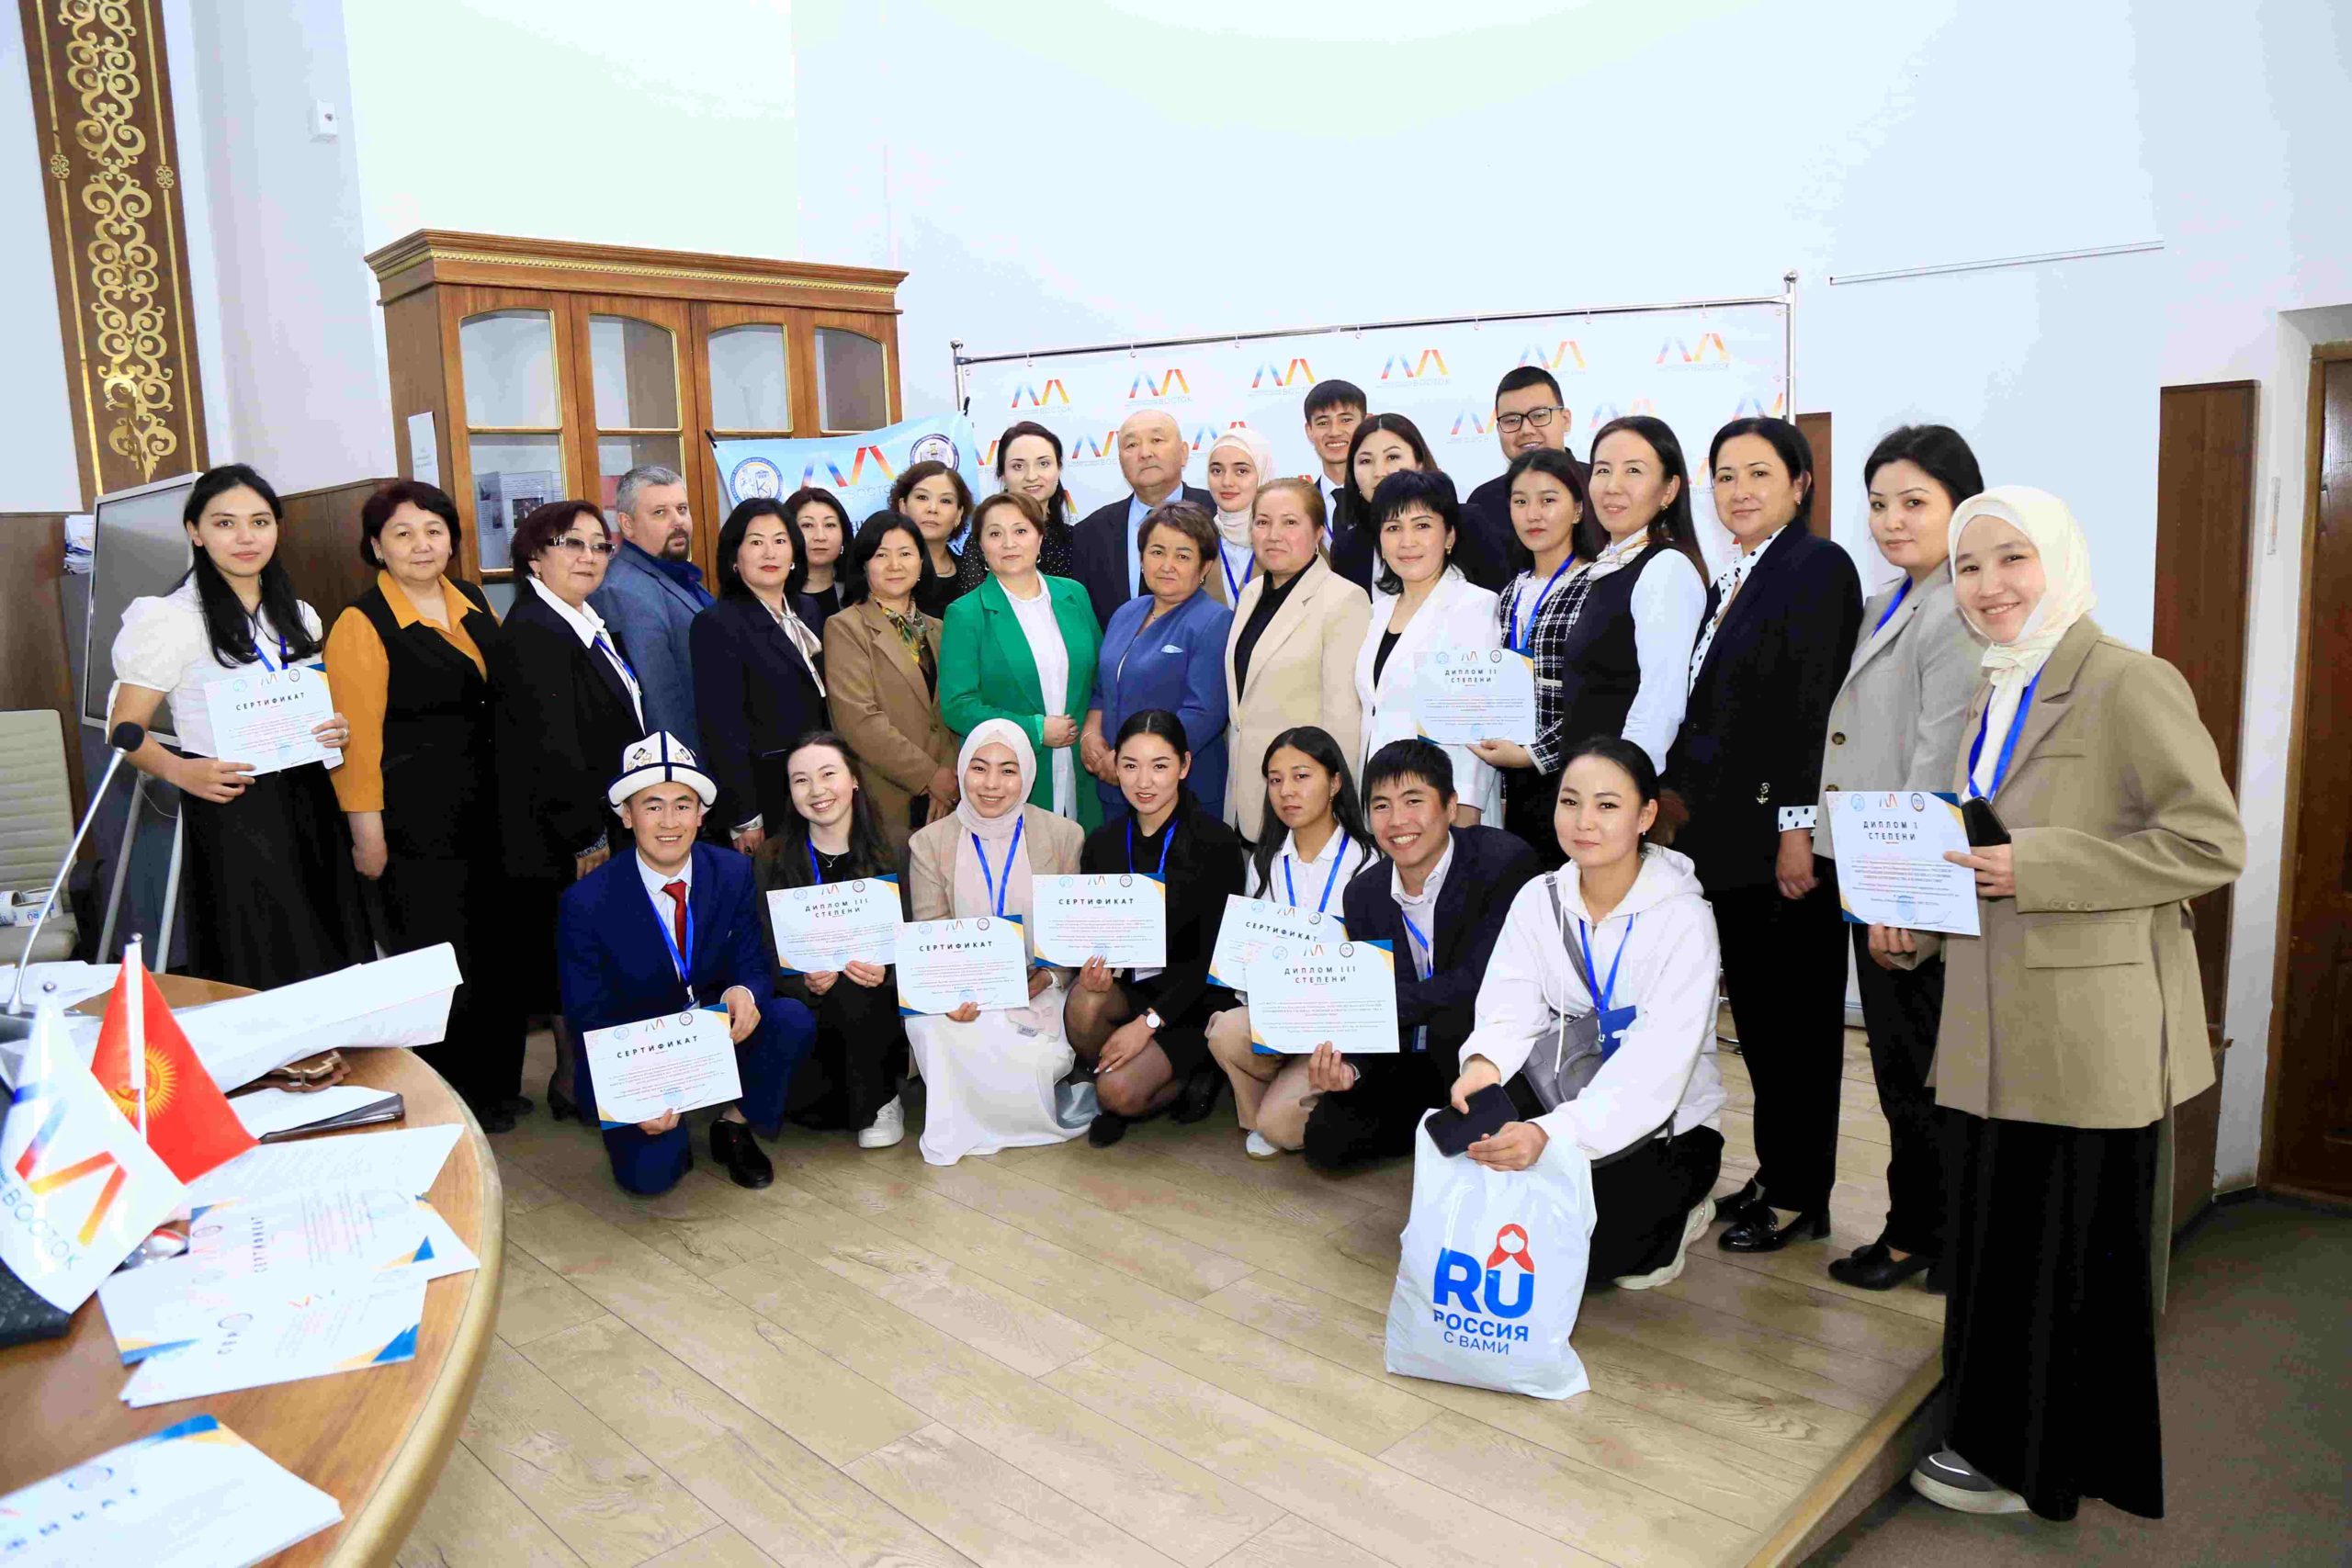 НИИРК – При поддержке НИИРК подведены итоги Национального конкурса лучших курсовых и выпускных работ среди студентов ВУЗов Кыргызстана